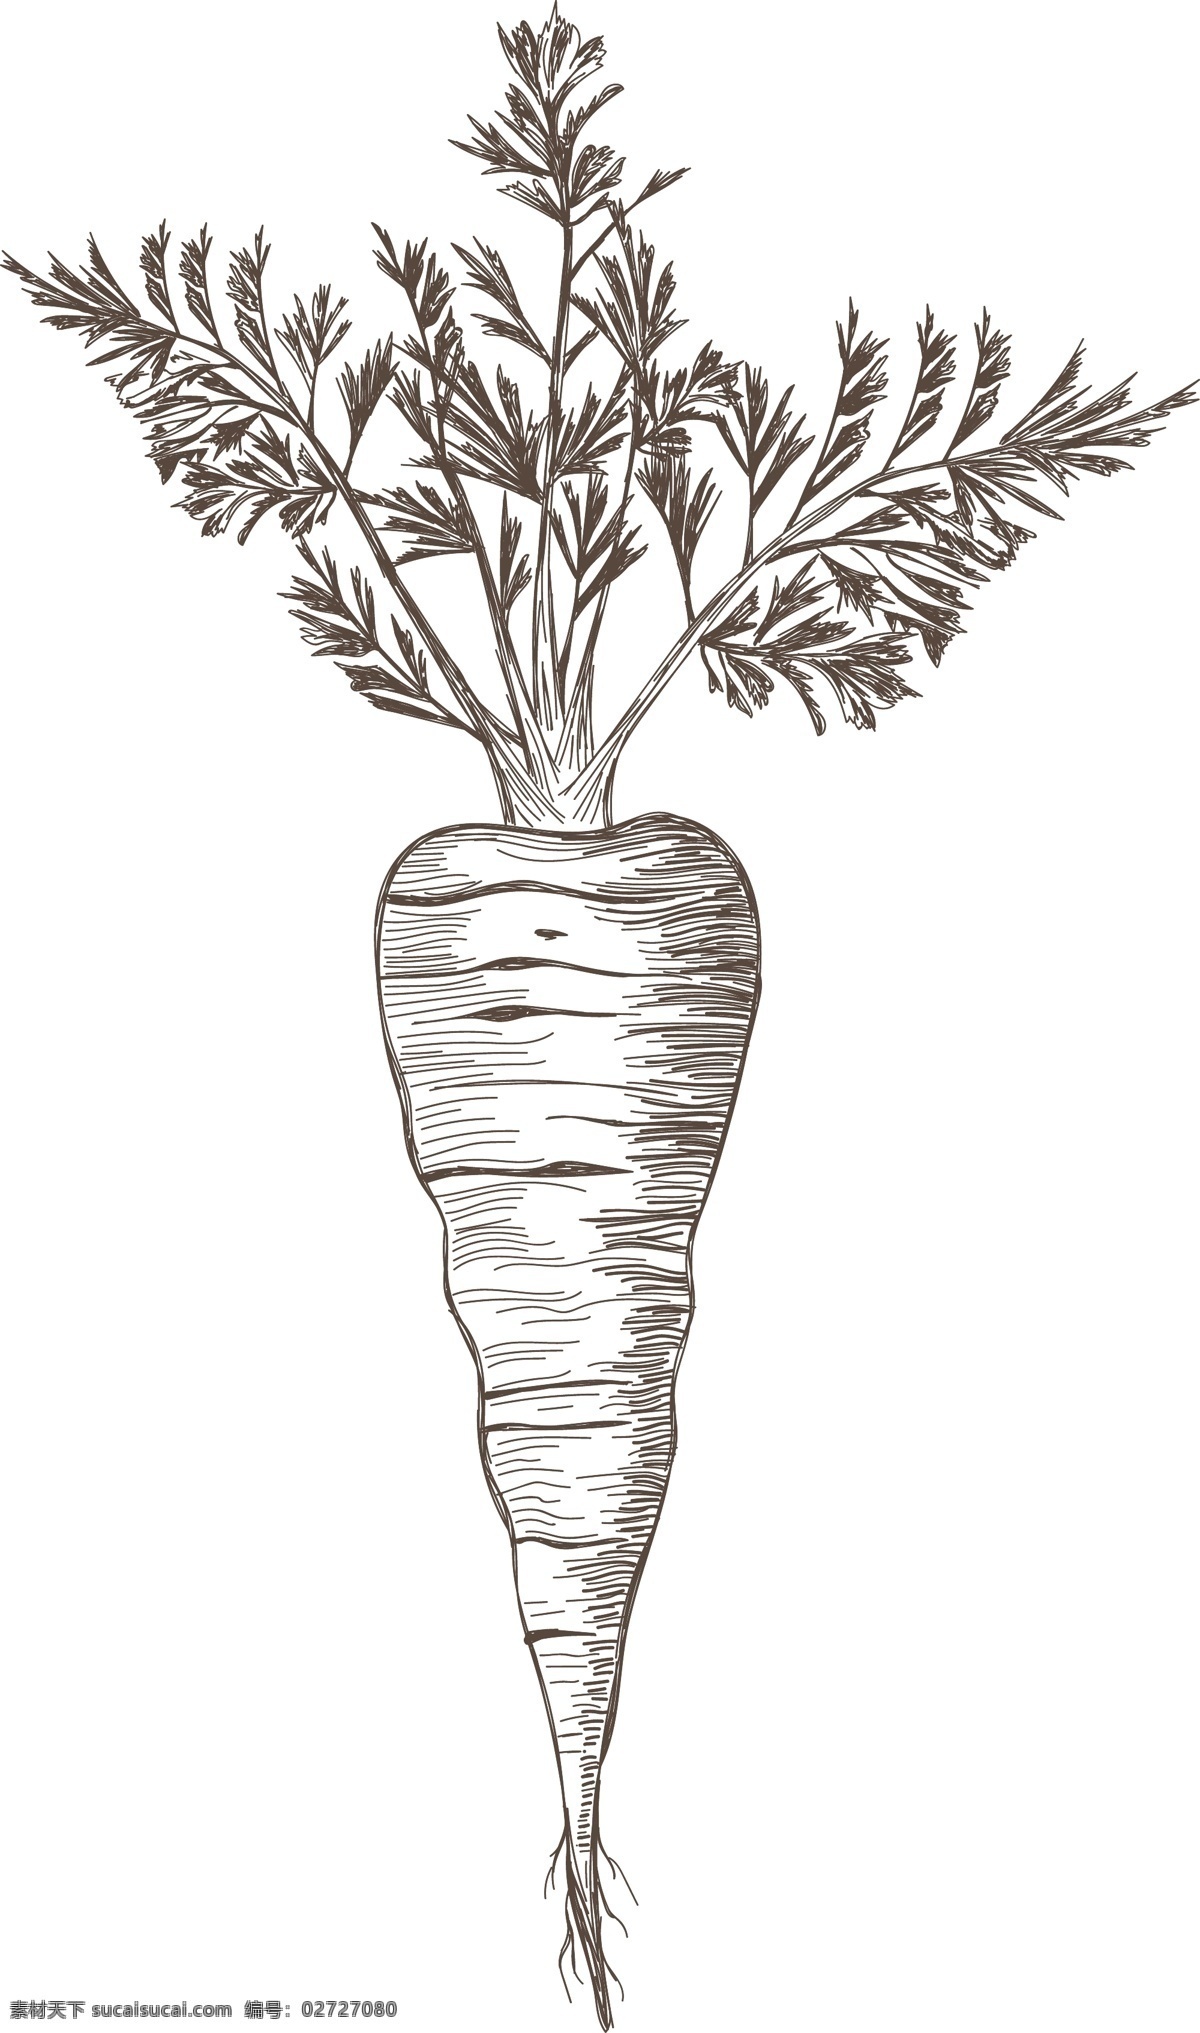 萝卜 蔬菜 logo 餐饮 食品行业 标志 矢量 素描 卡通 手绘 铅笔画 健康